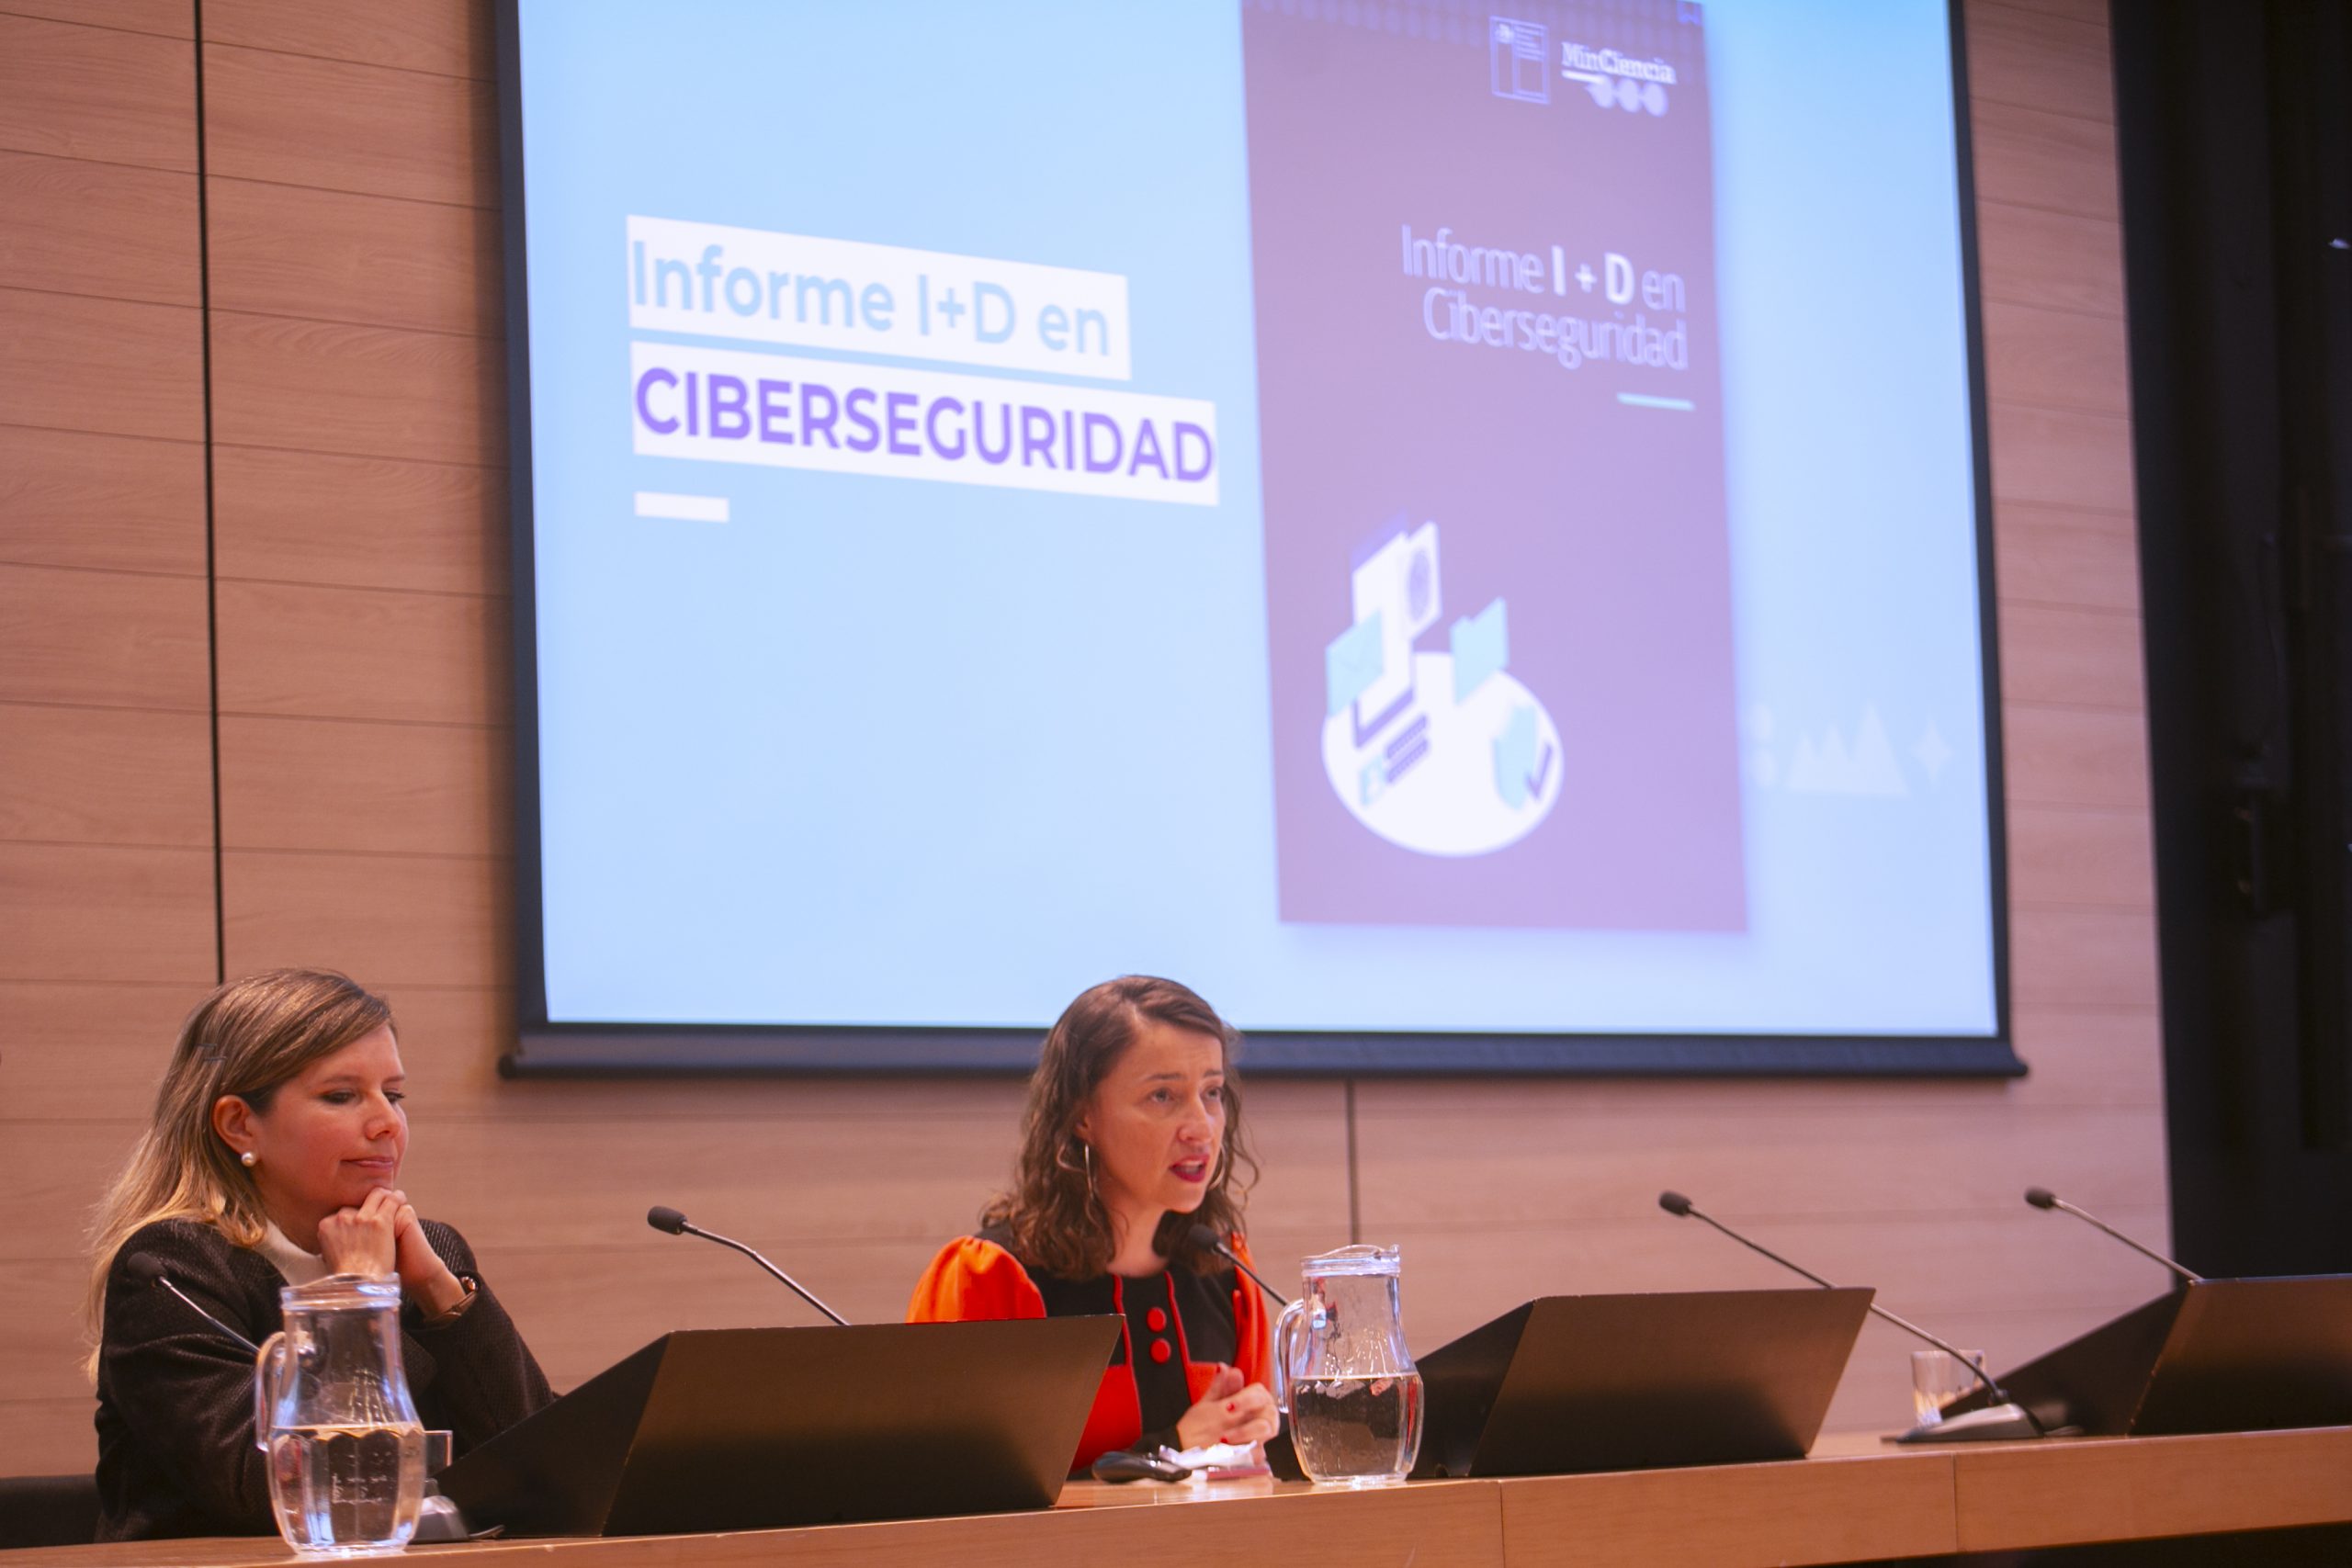 Gobierno presentó informe sobre I+D en ciberseguridad en Chile